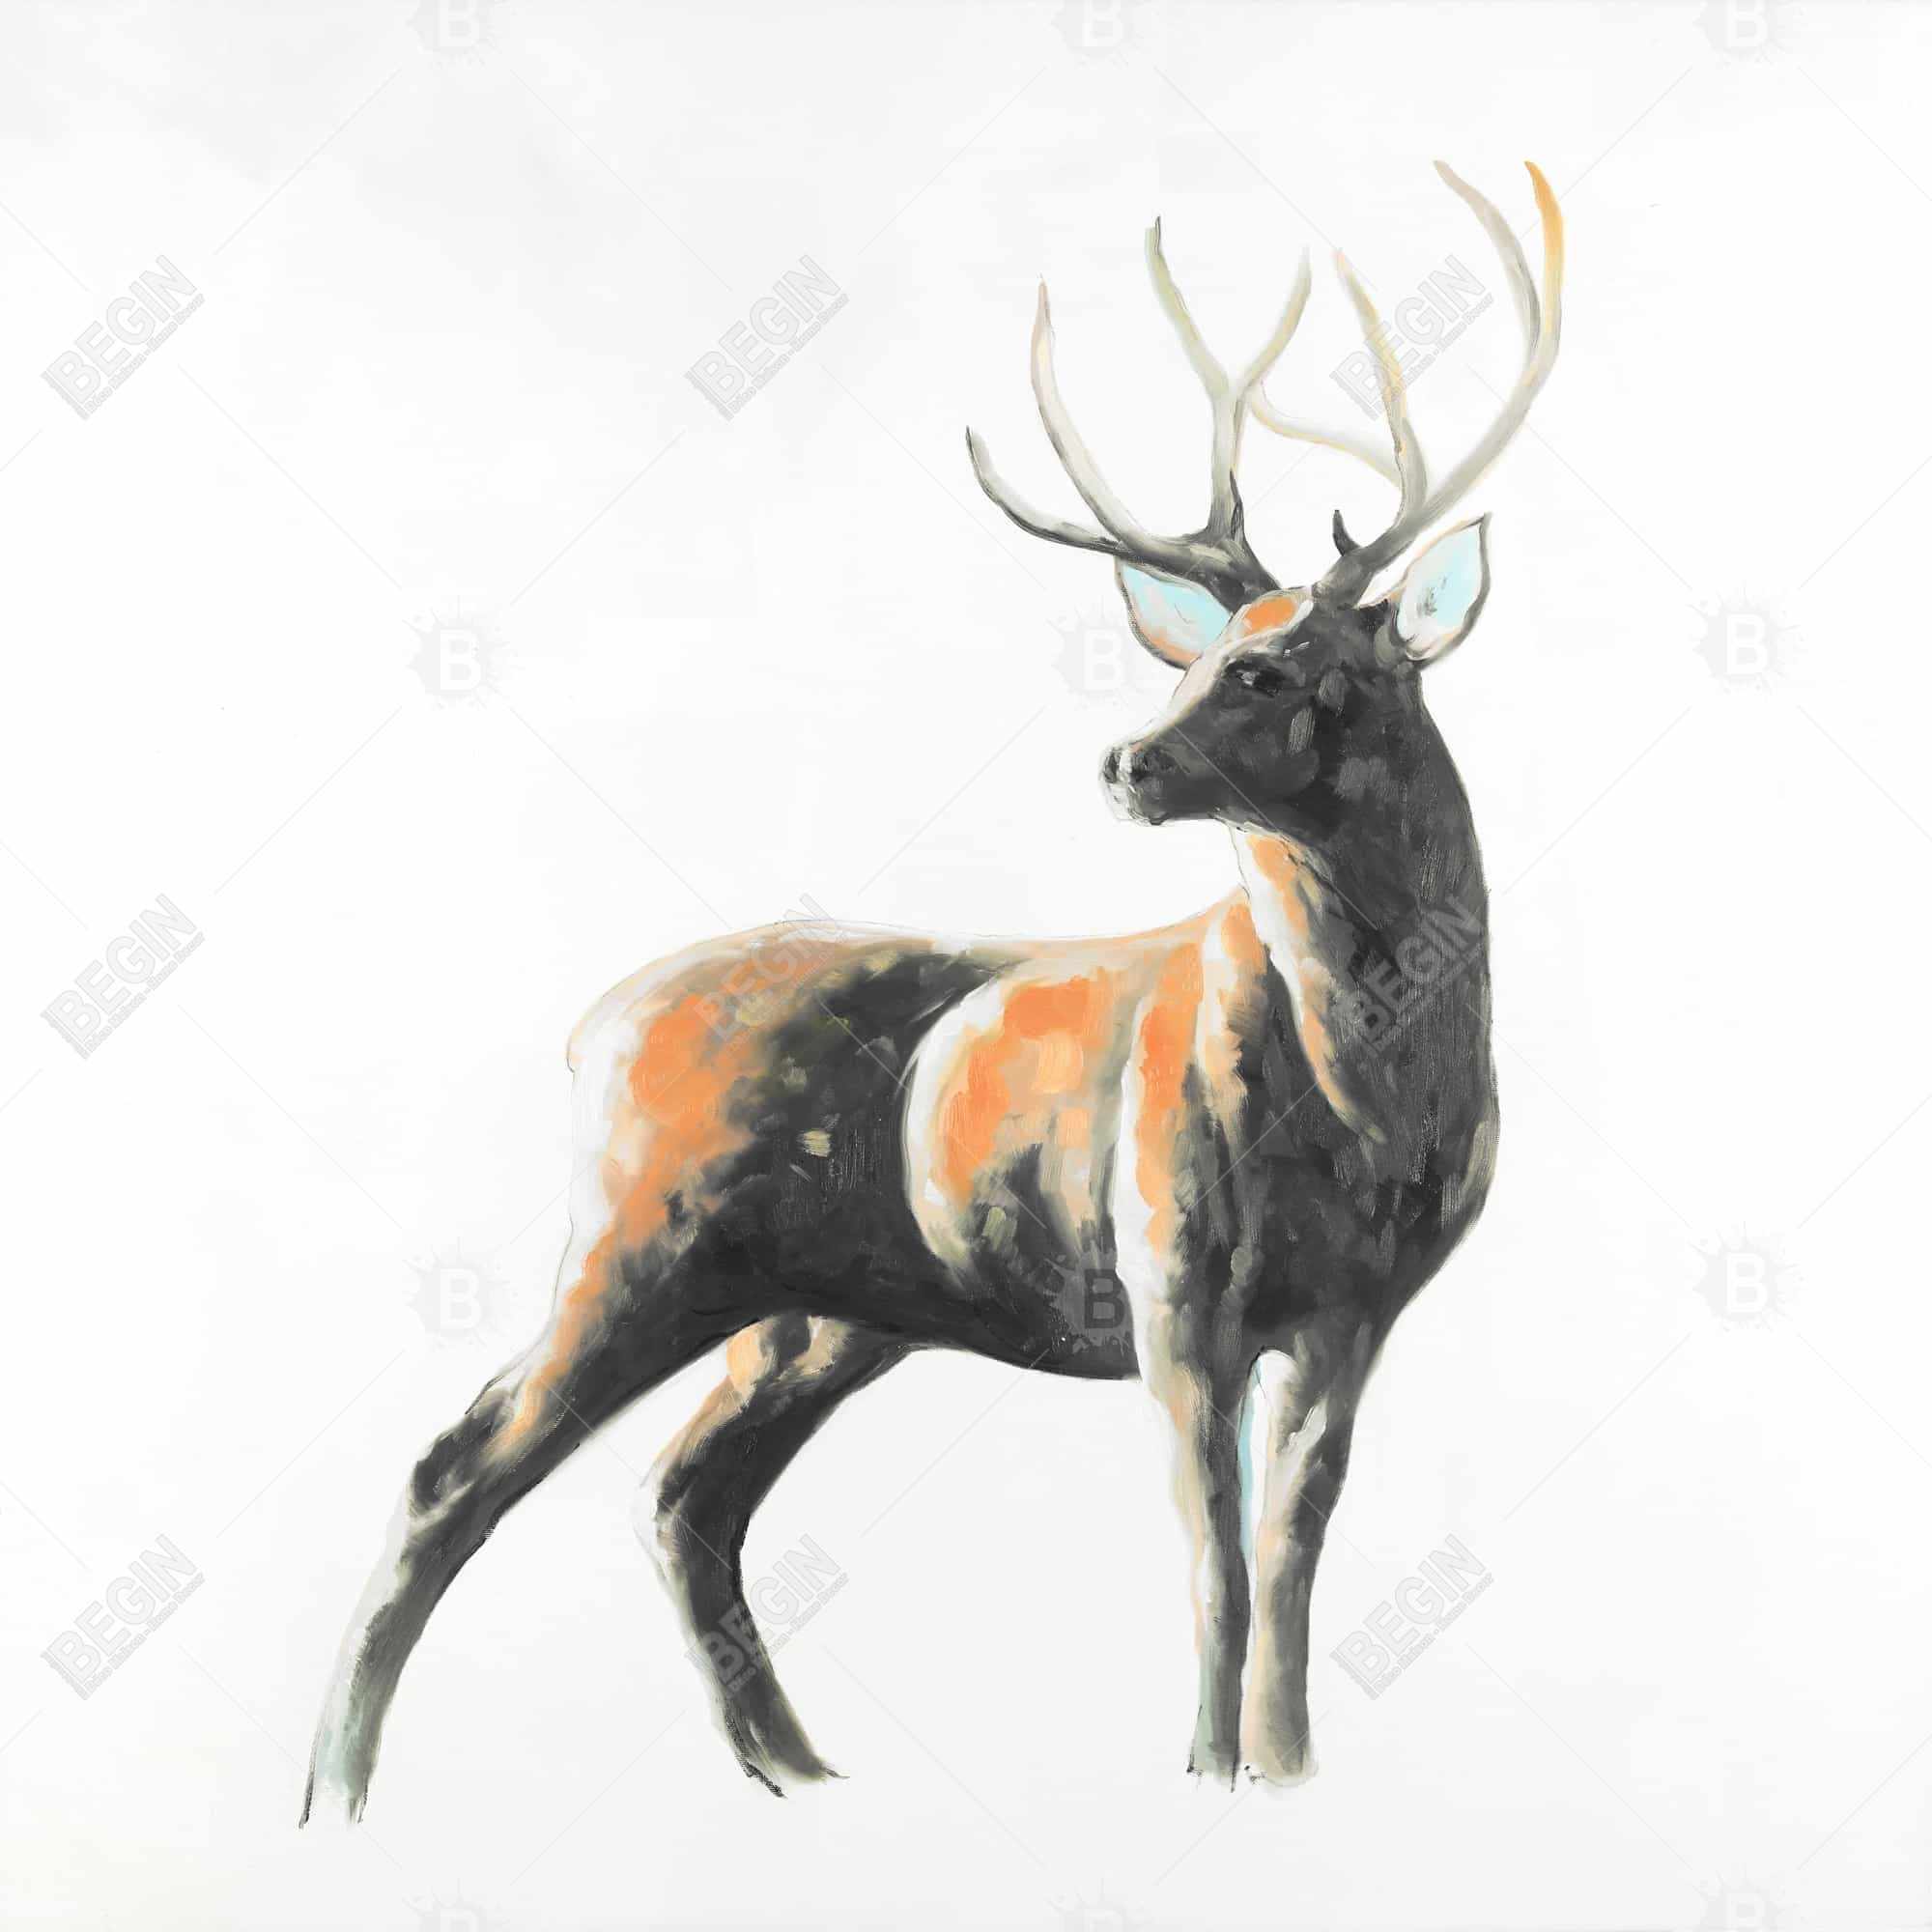 Abstract deer